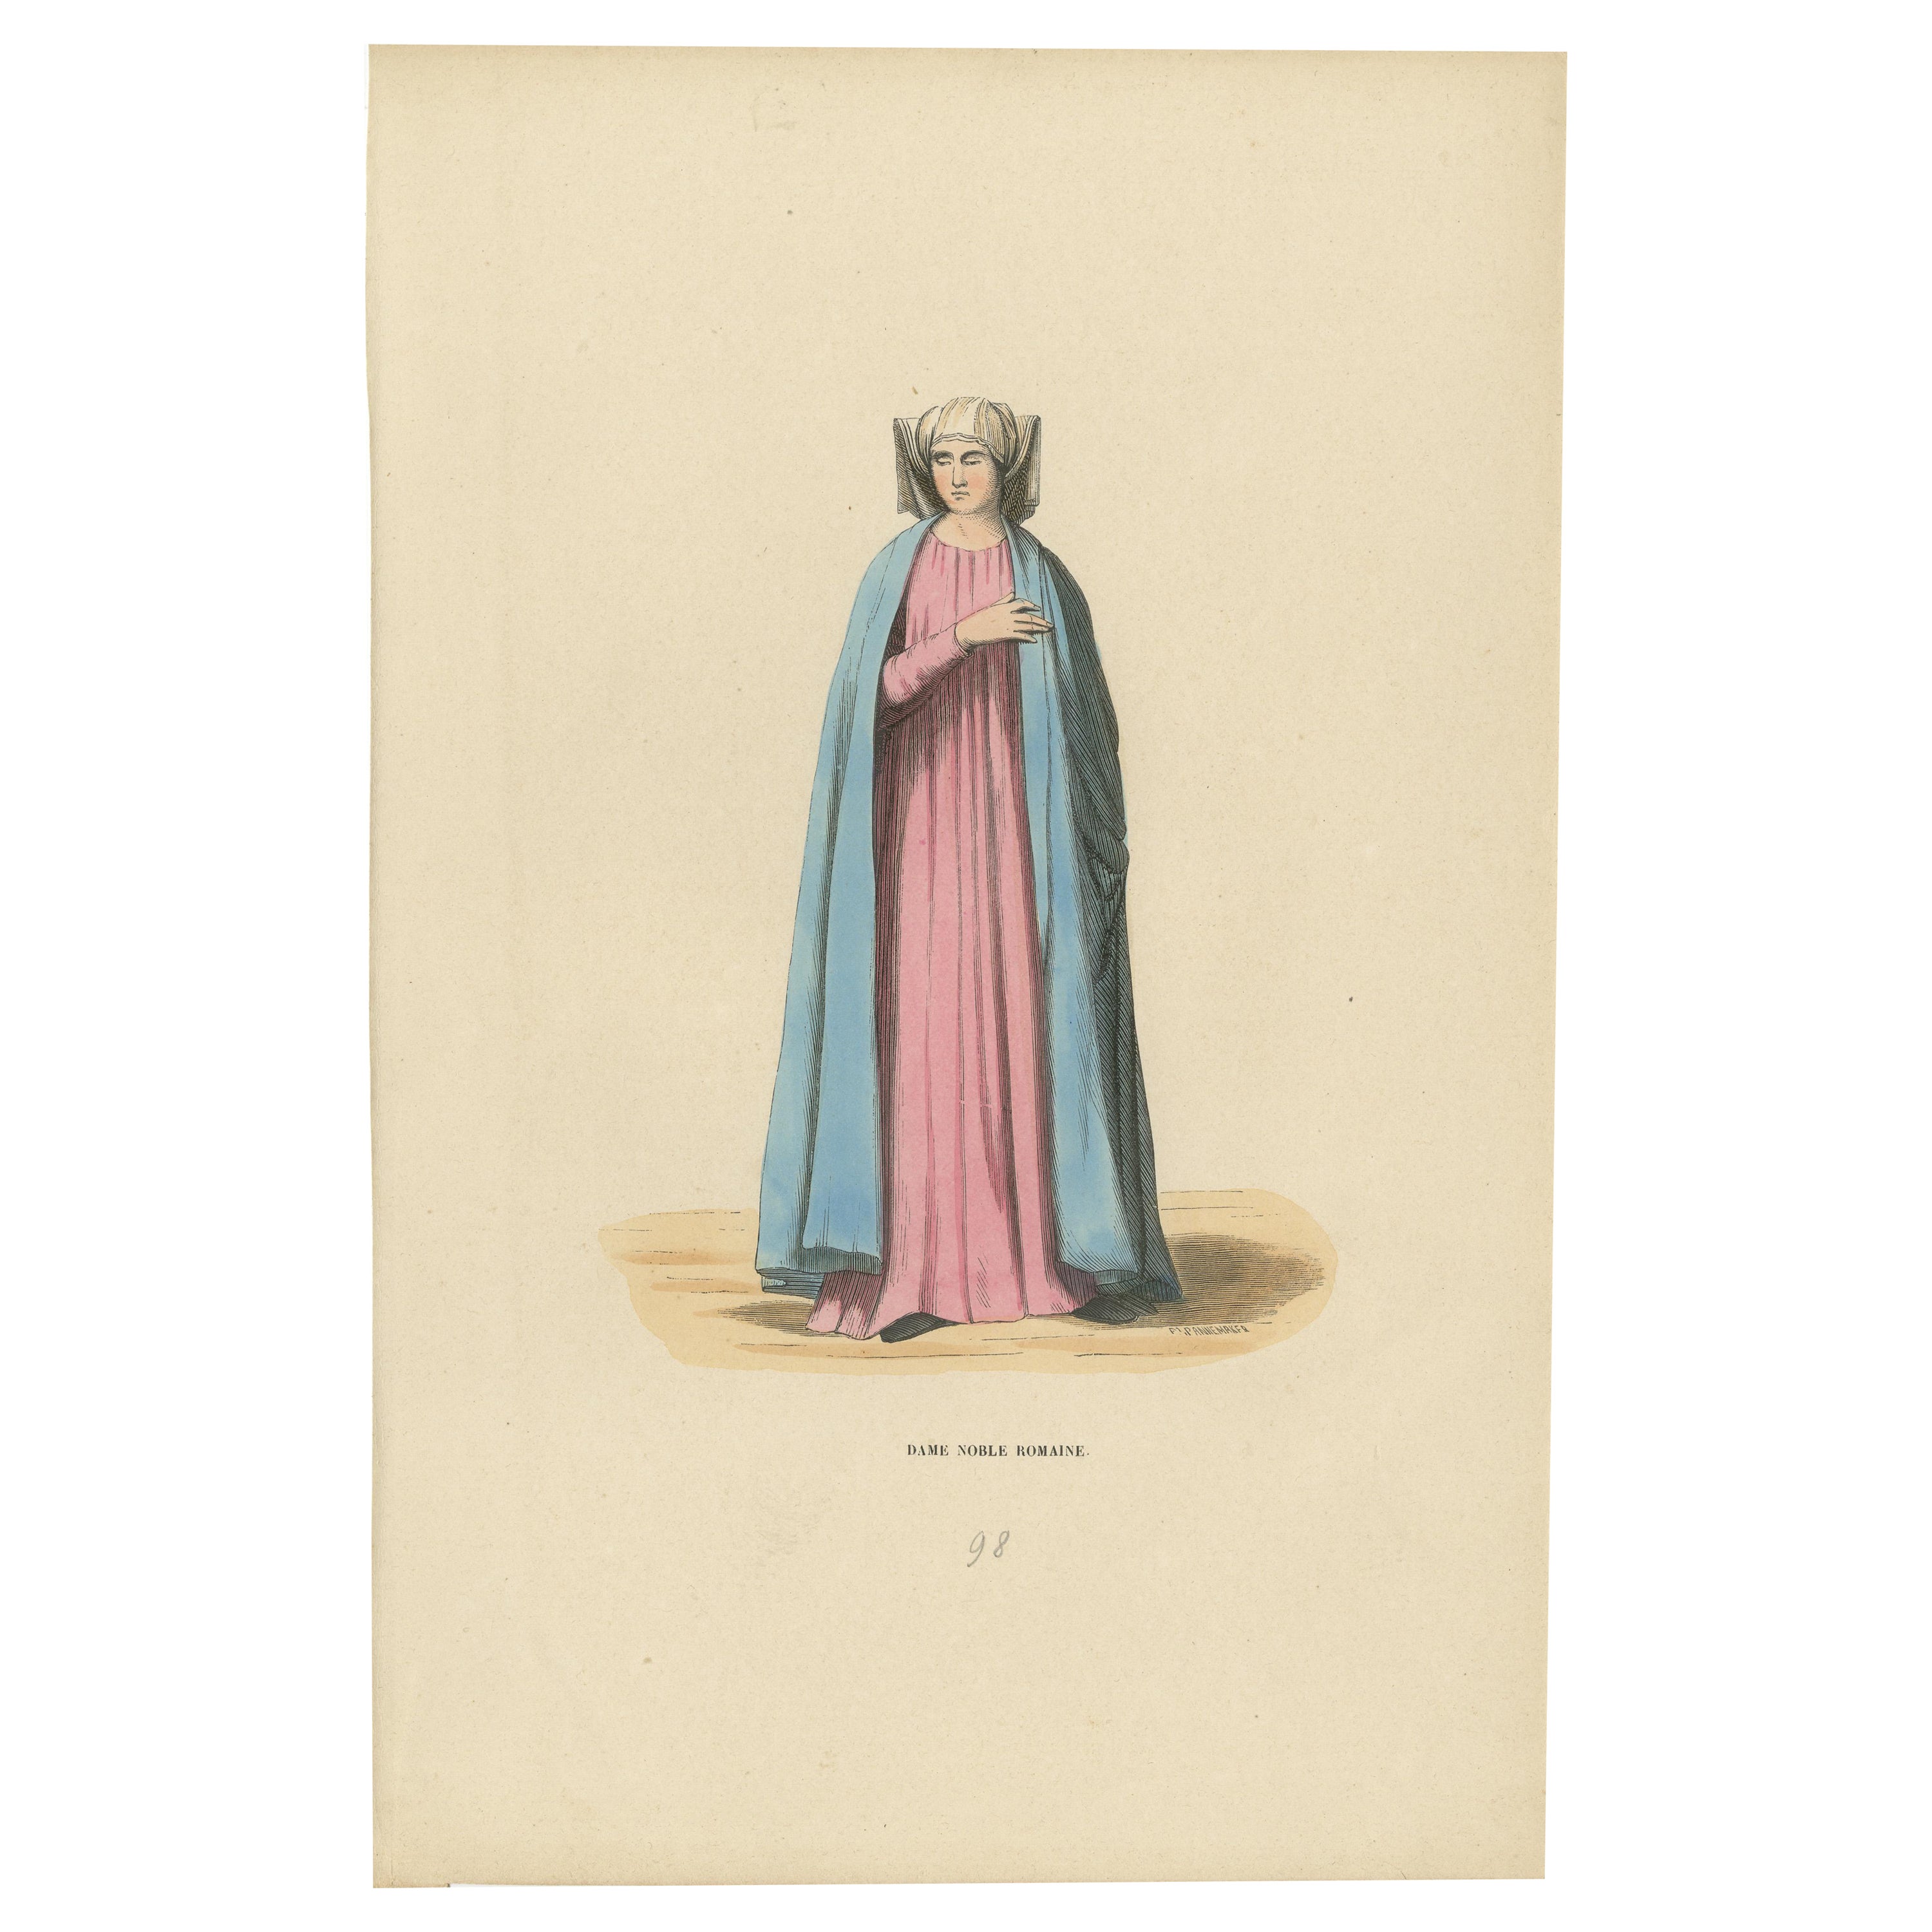 Noble dame romaine du Moyen Âge, colorée à la main et publiée en 1847